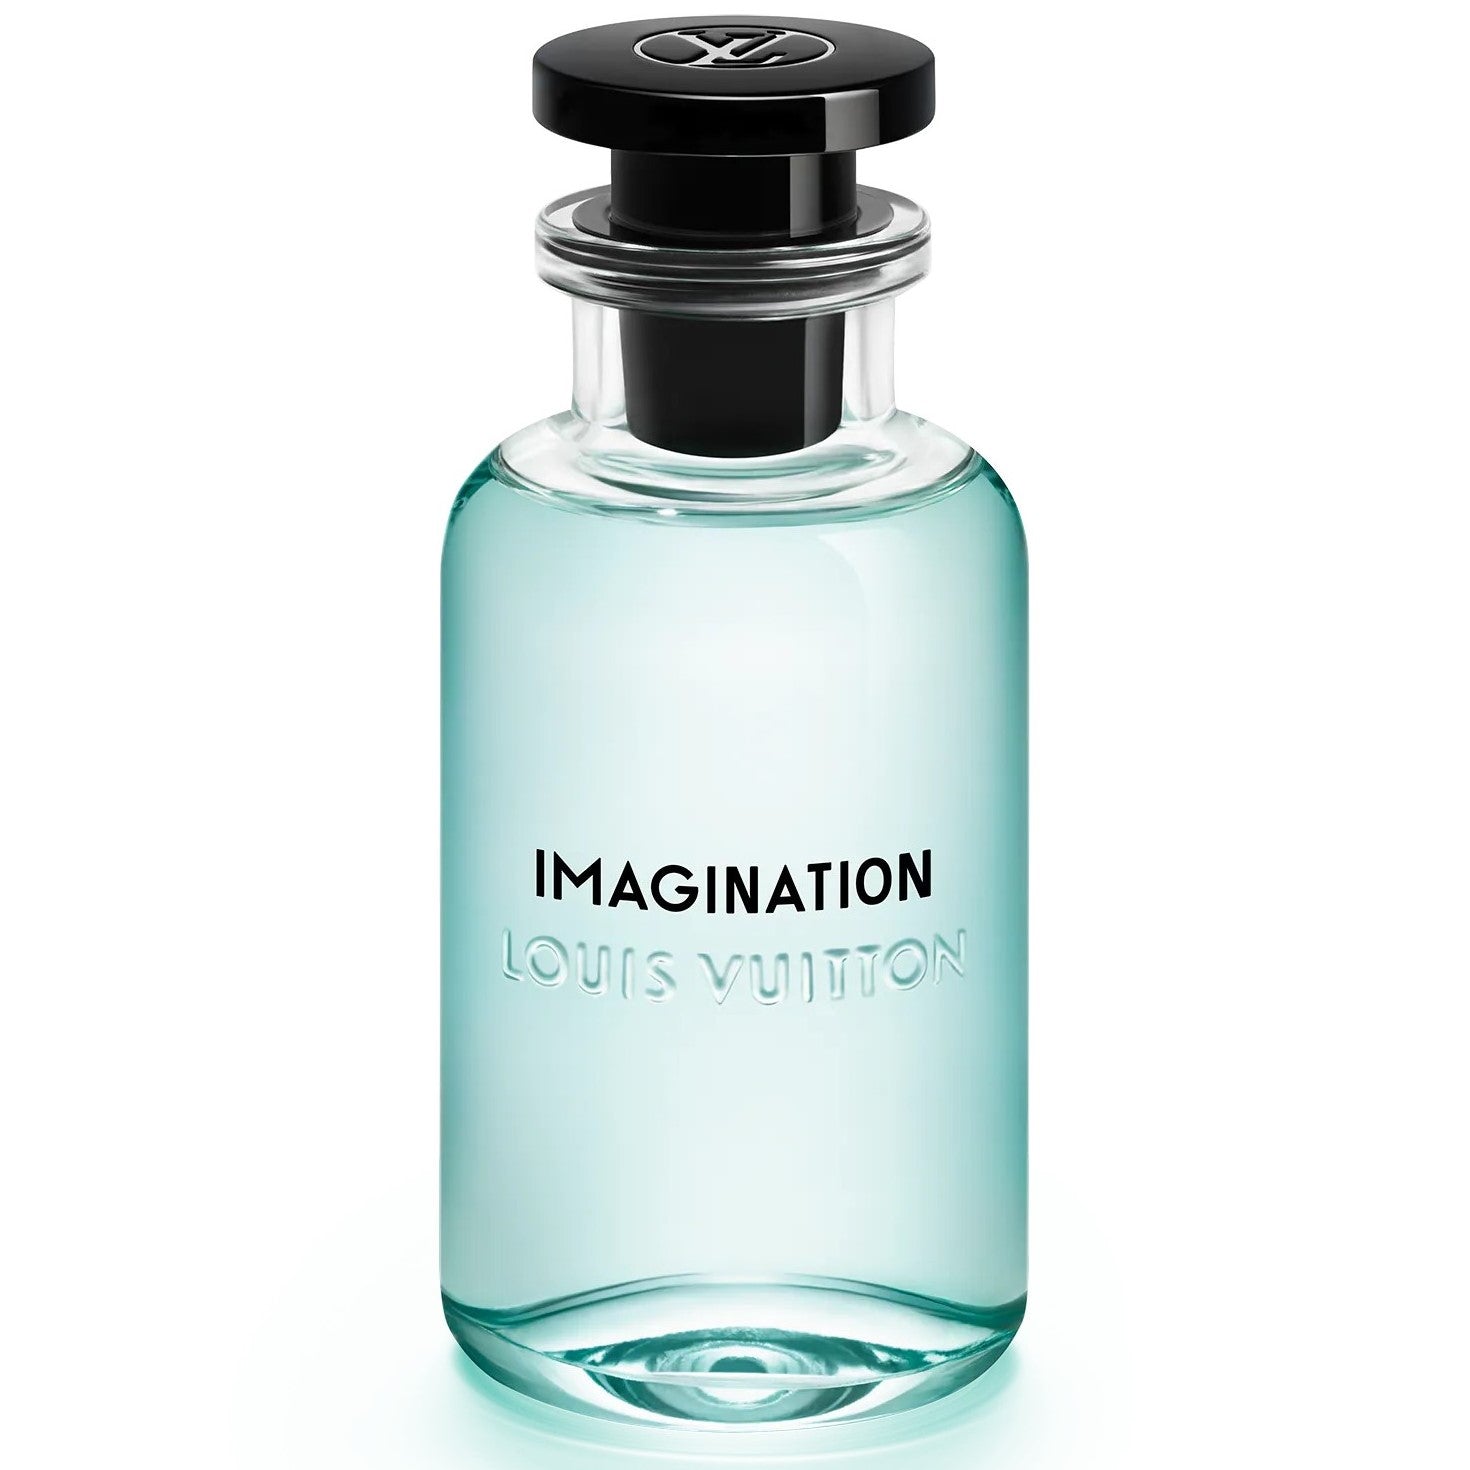 Louis Vuitton Imagination Eau de Parfum Herrenparfüm Probe Abfüllung Tester Parfüm 0,5 ml 1 ml 2 ml 5 ml